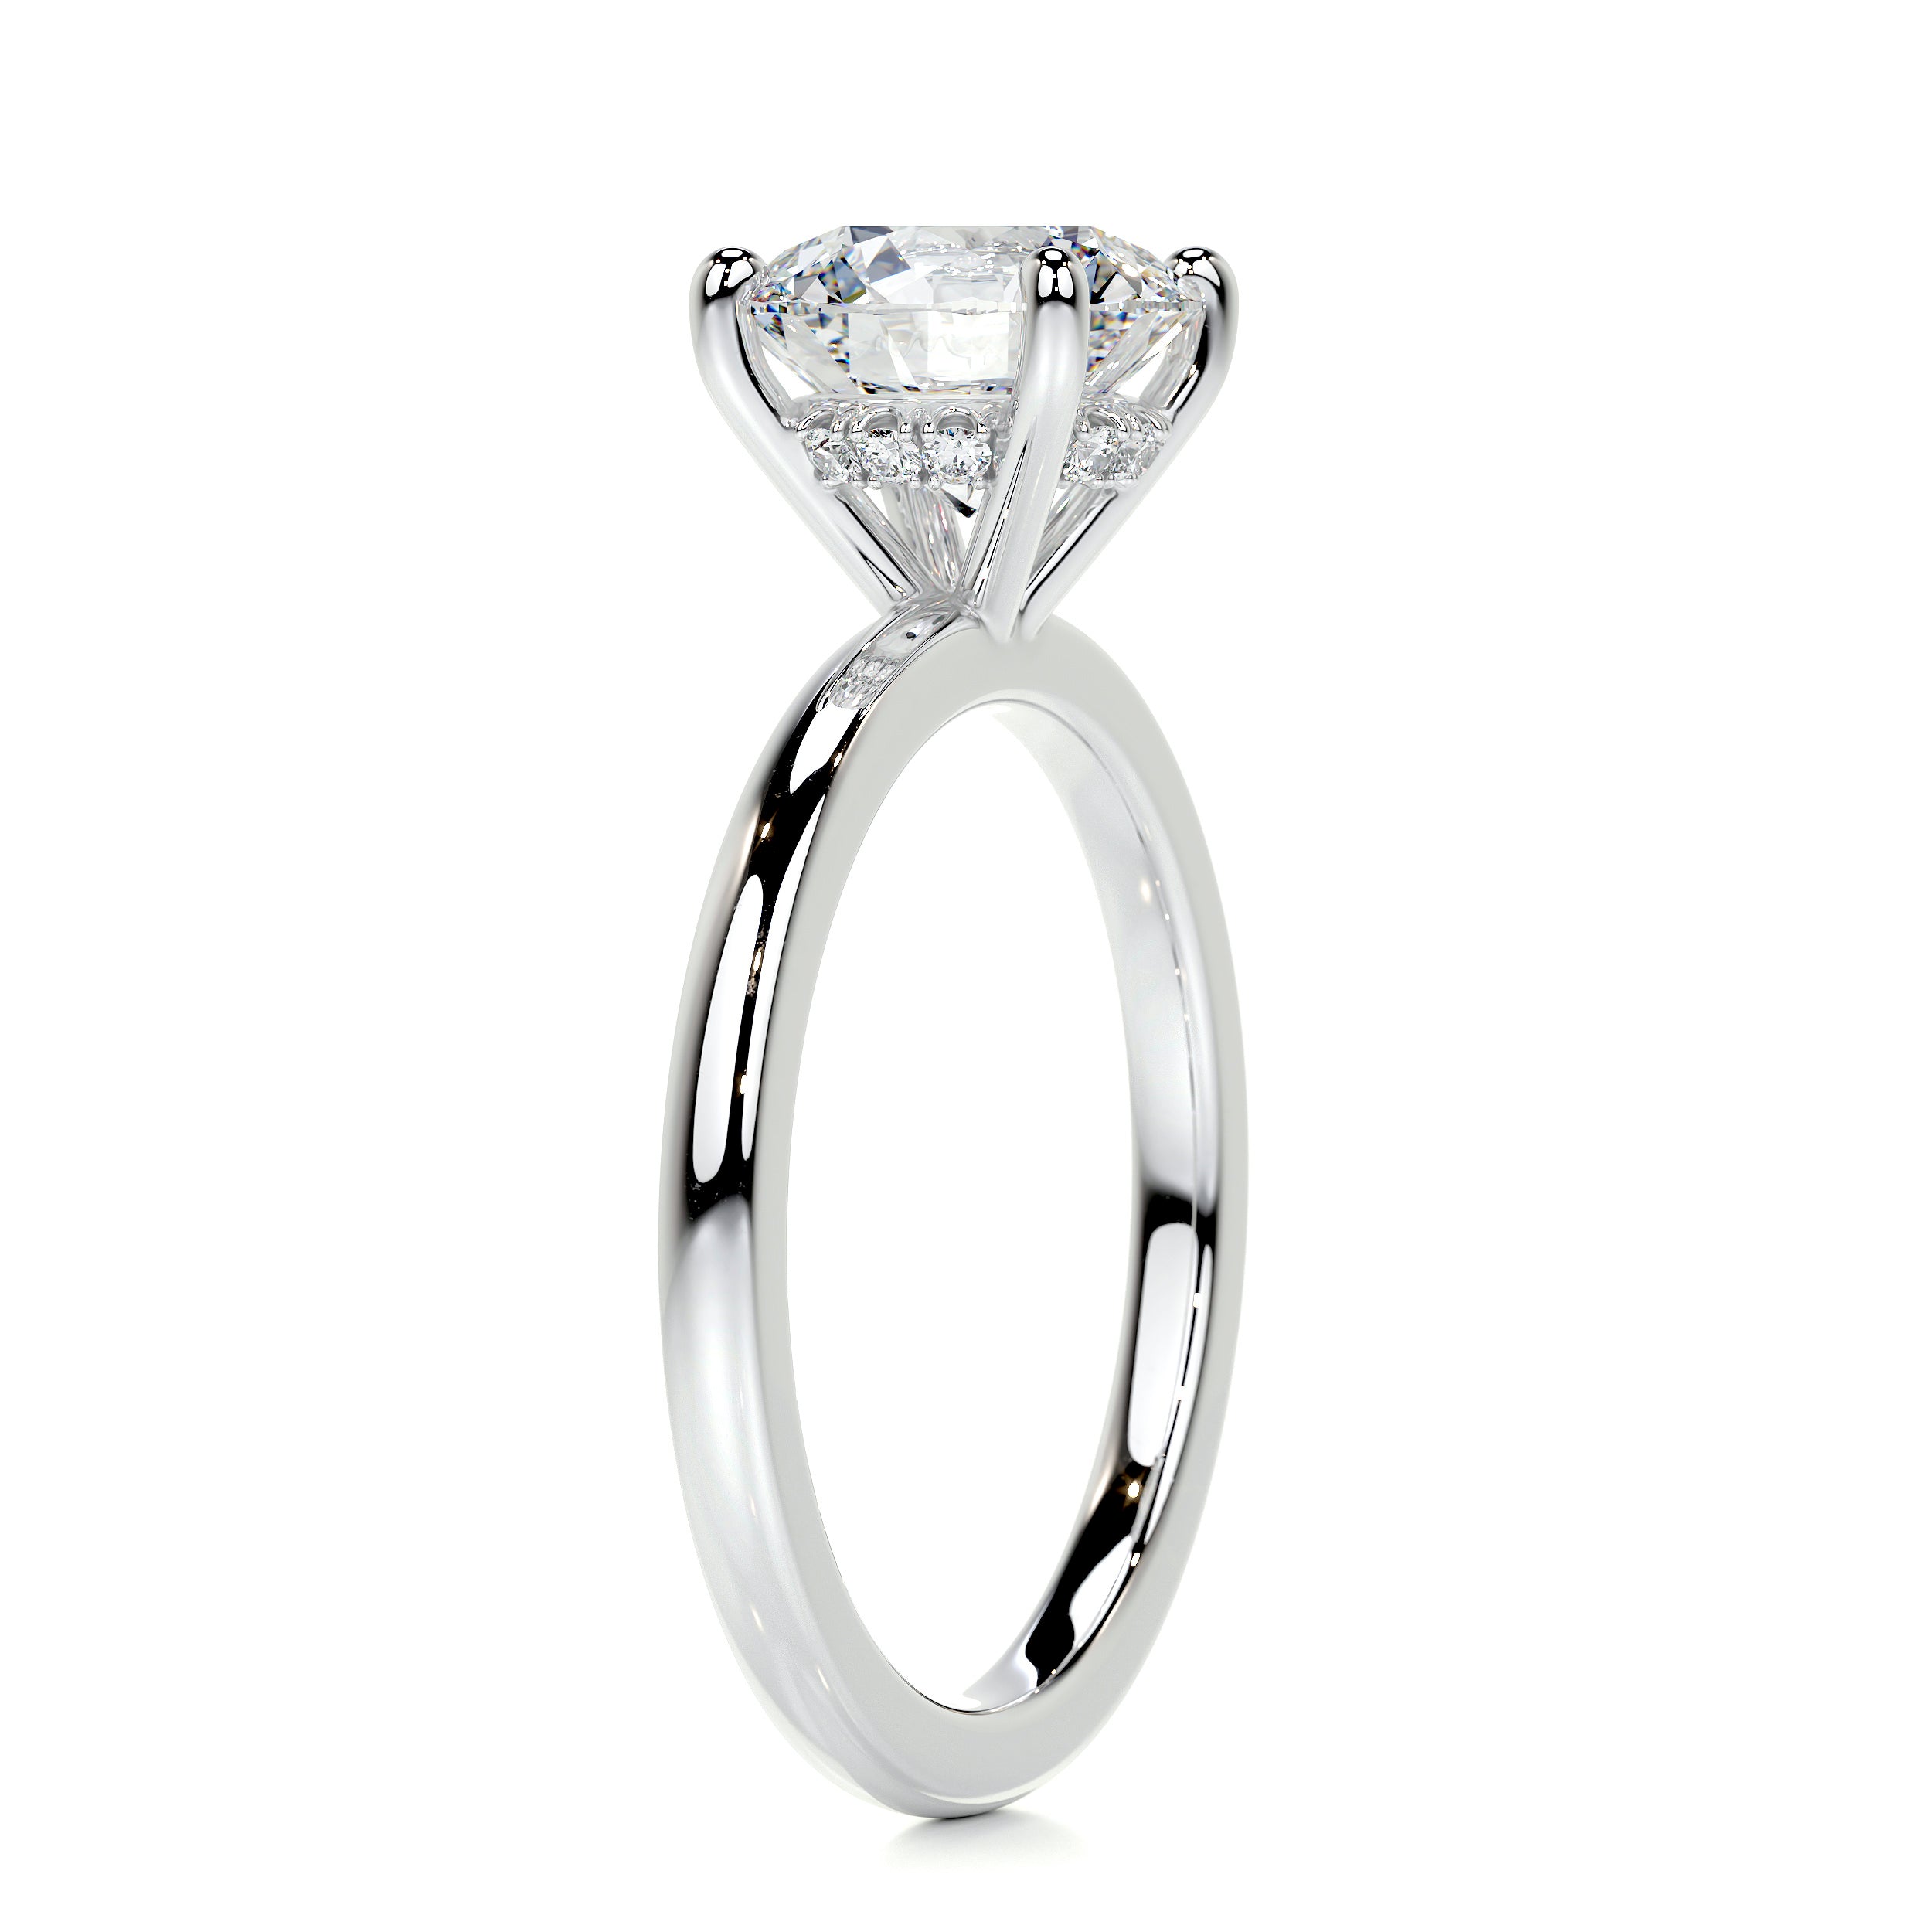 Cynthia Diamond Engagement Ring   (2.1 Carat) -18K White Gold